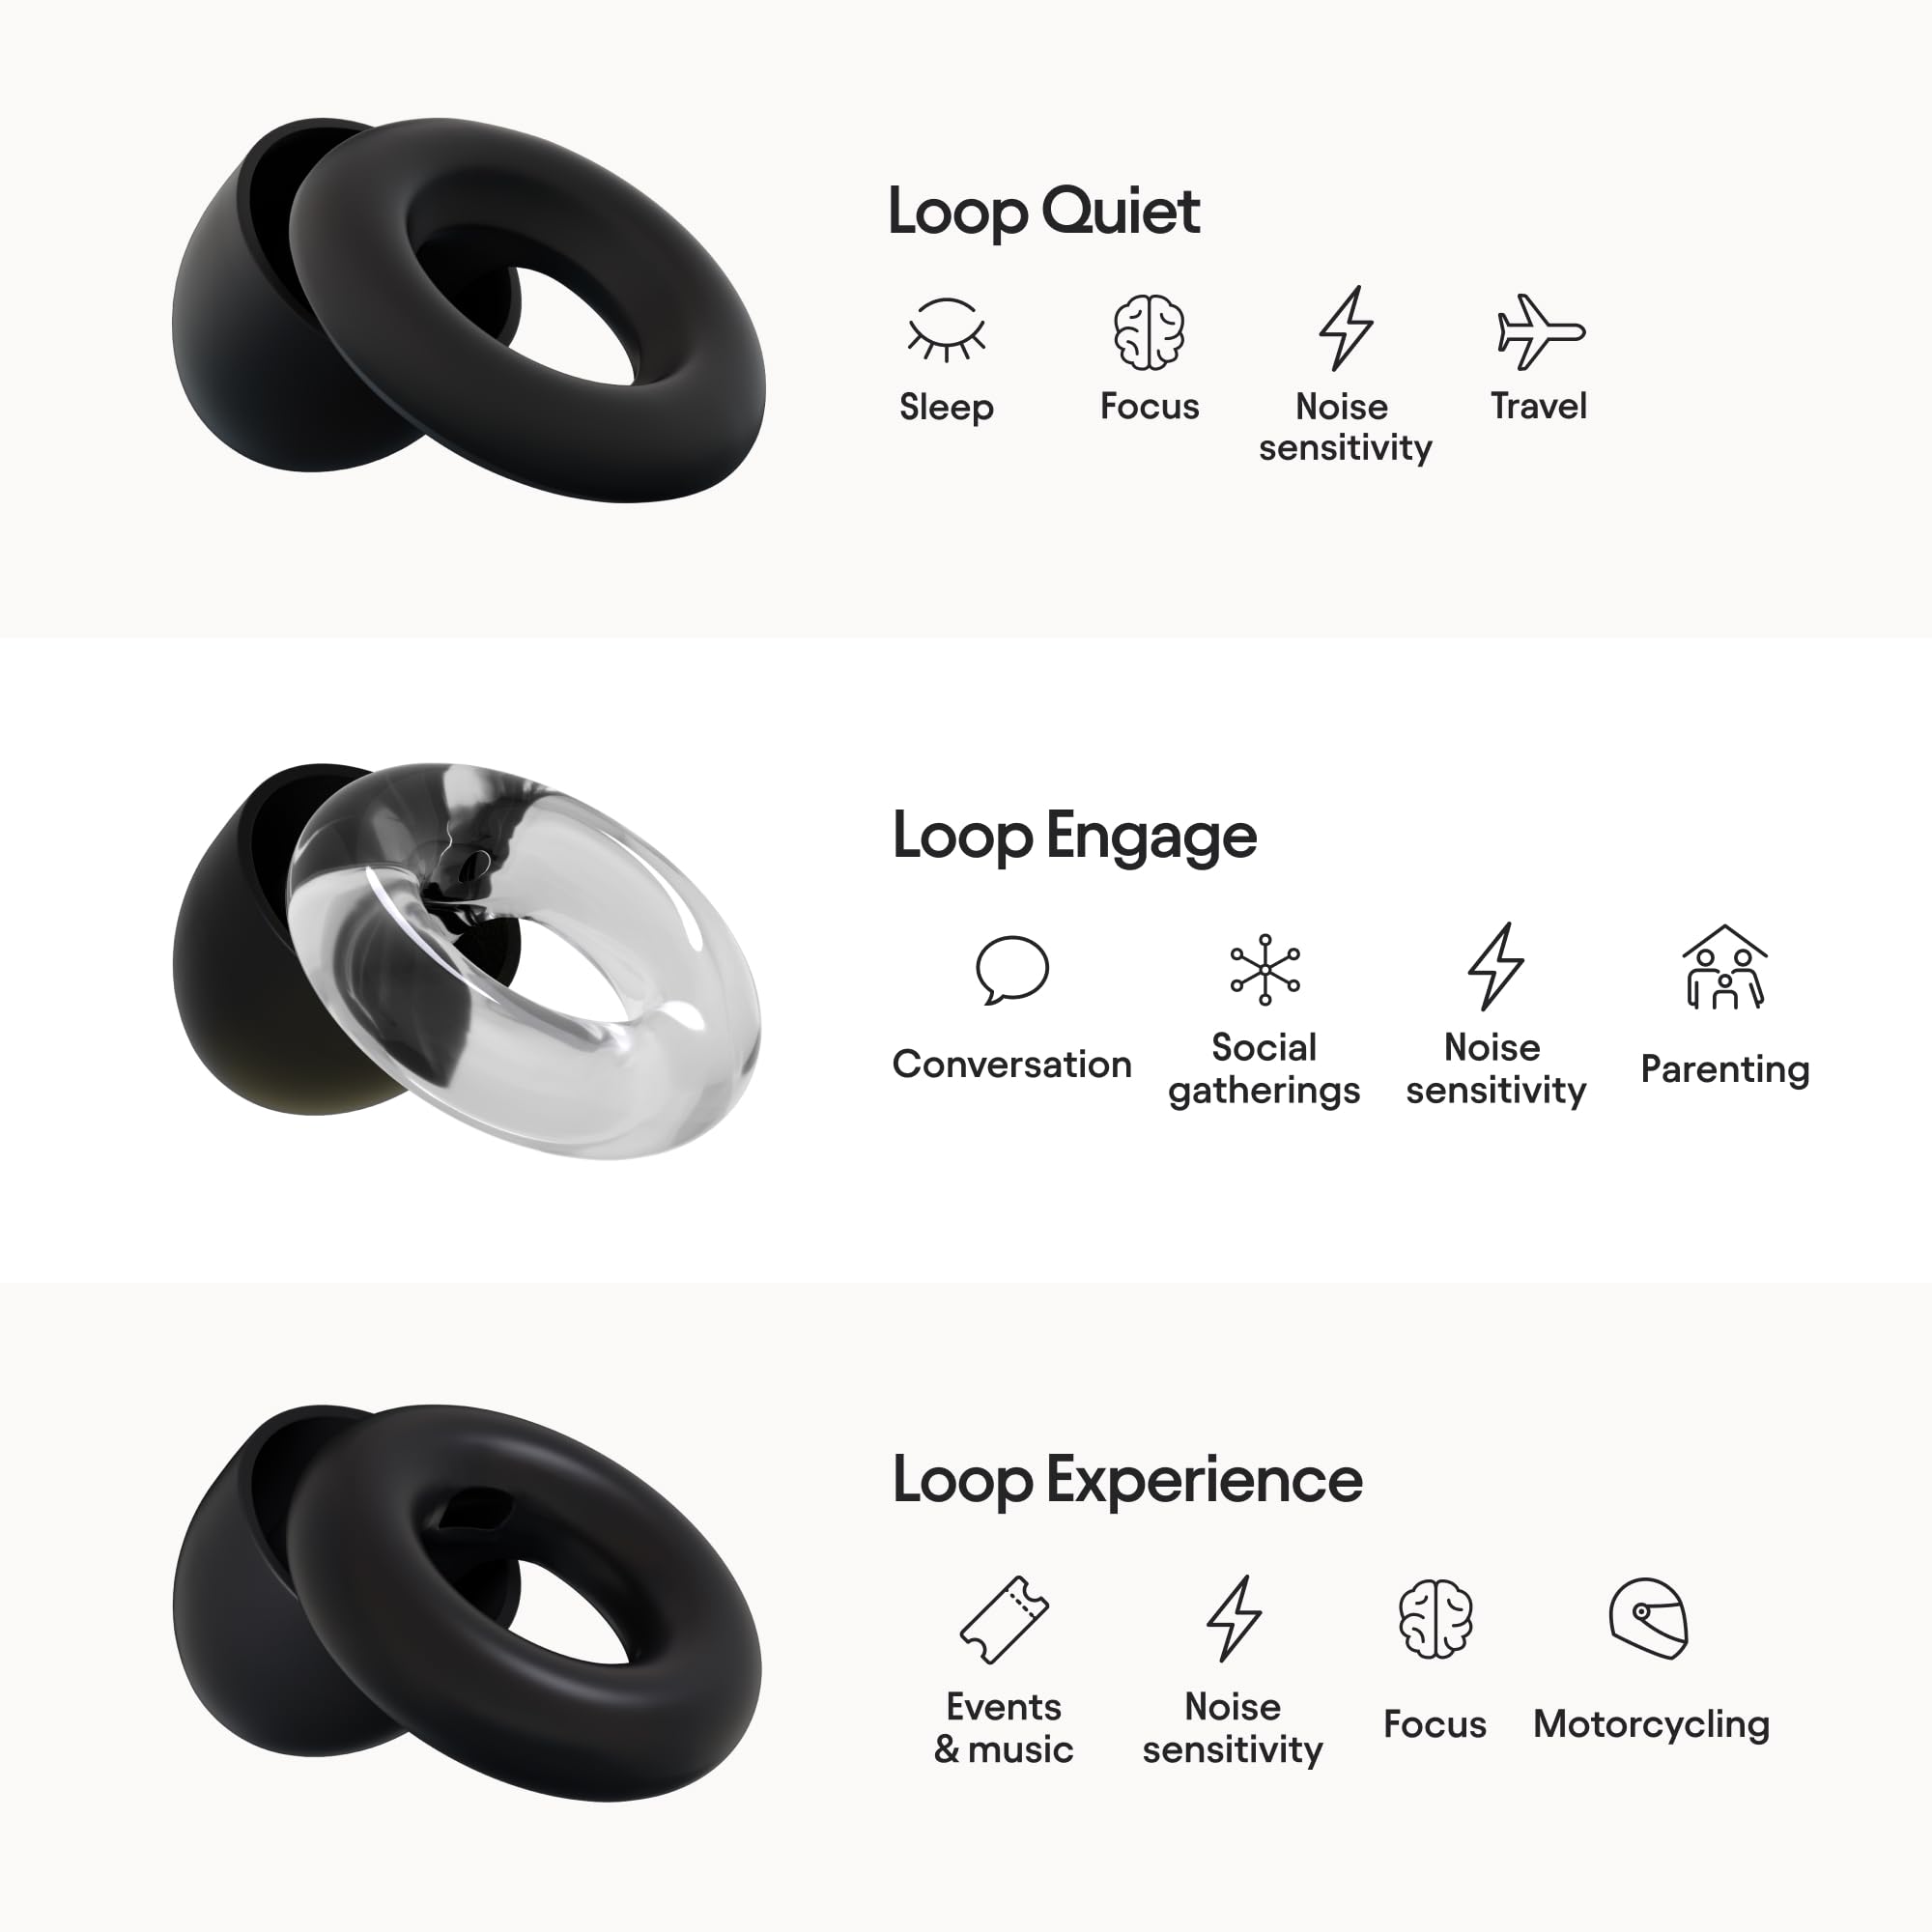 Loop Earplugs Ultimate Bundle (3-Pack) – Loop Quiet + Loop Experience + Loop Engage + Mute + Carry Case | Ear Plugs for Sleep, Focus, Concerts, Socializing & More | 26 dB/18 dB/16 dB Noise Reduction